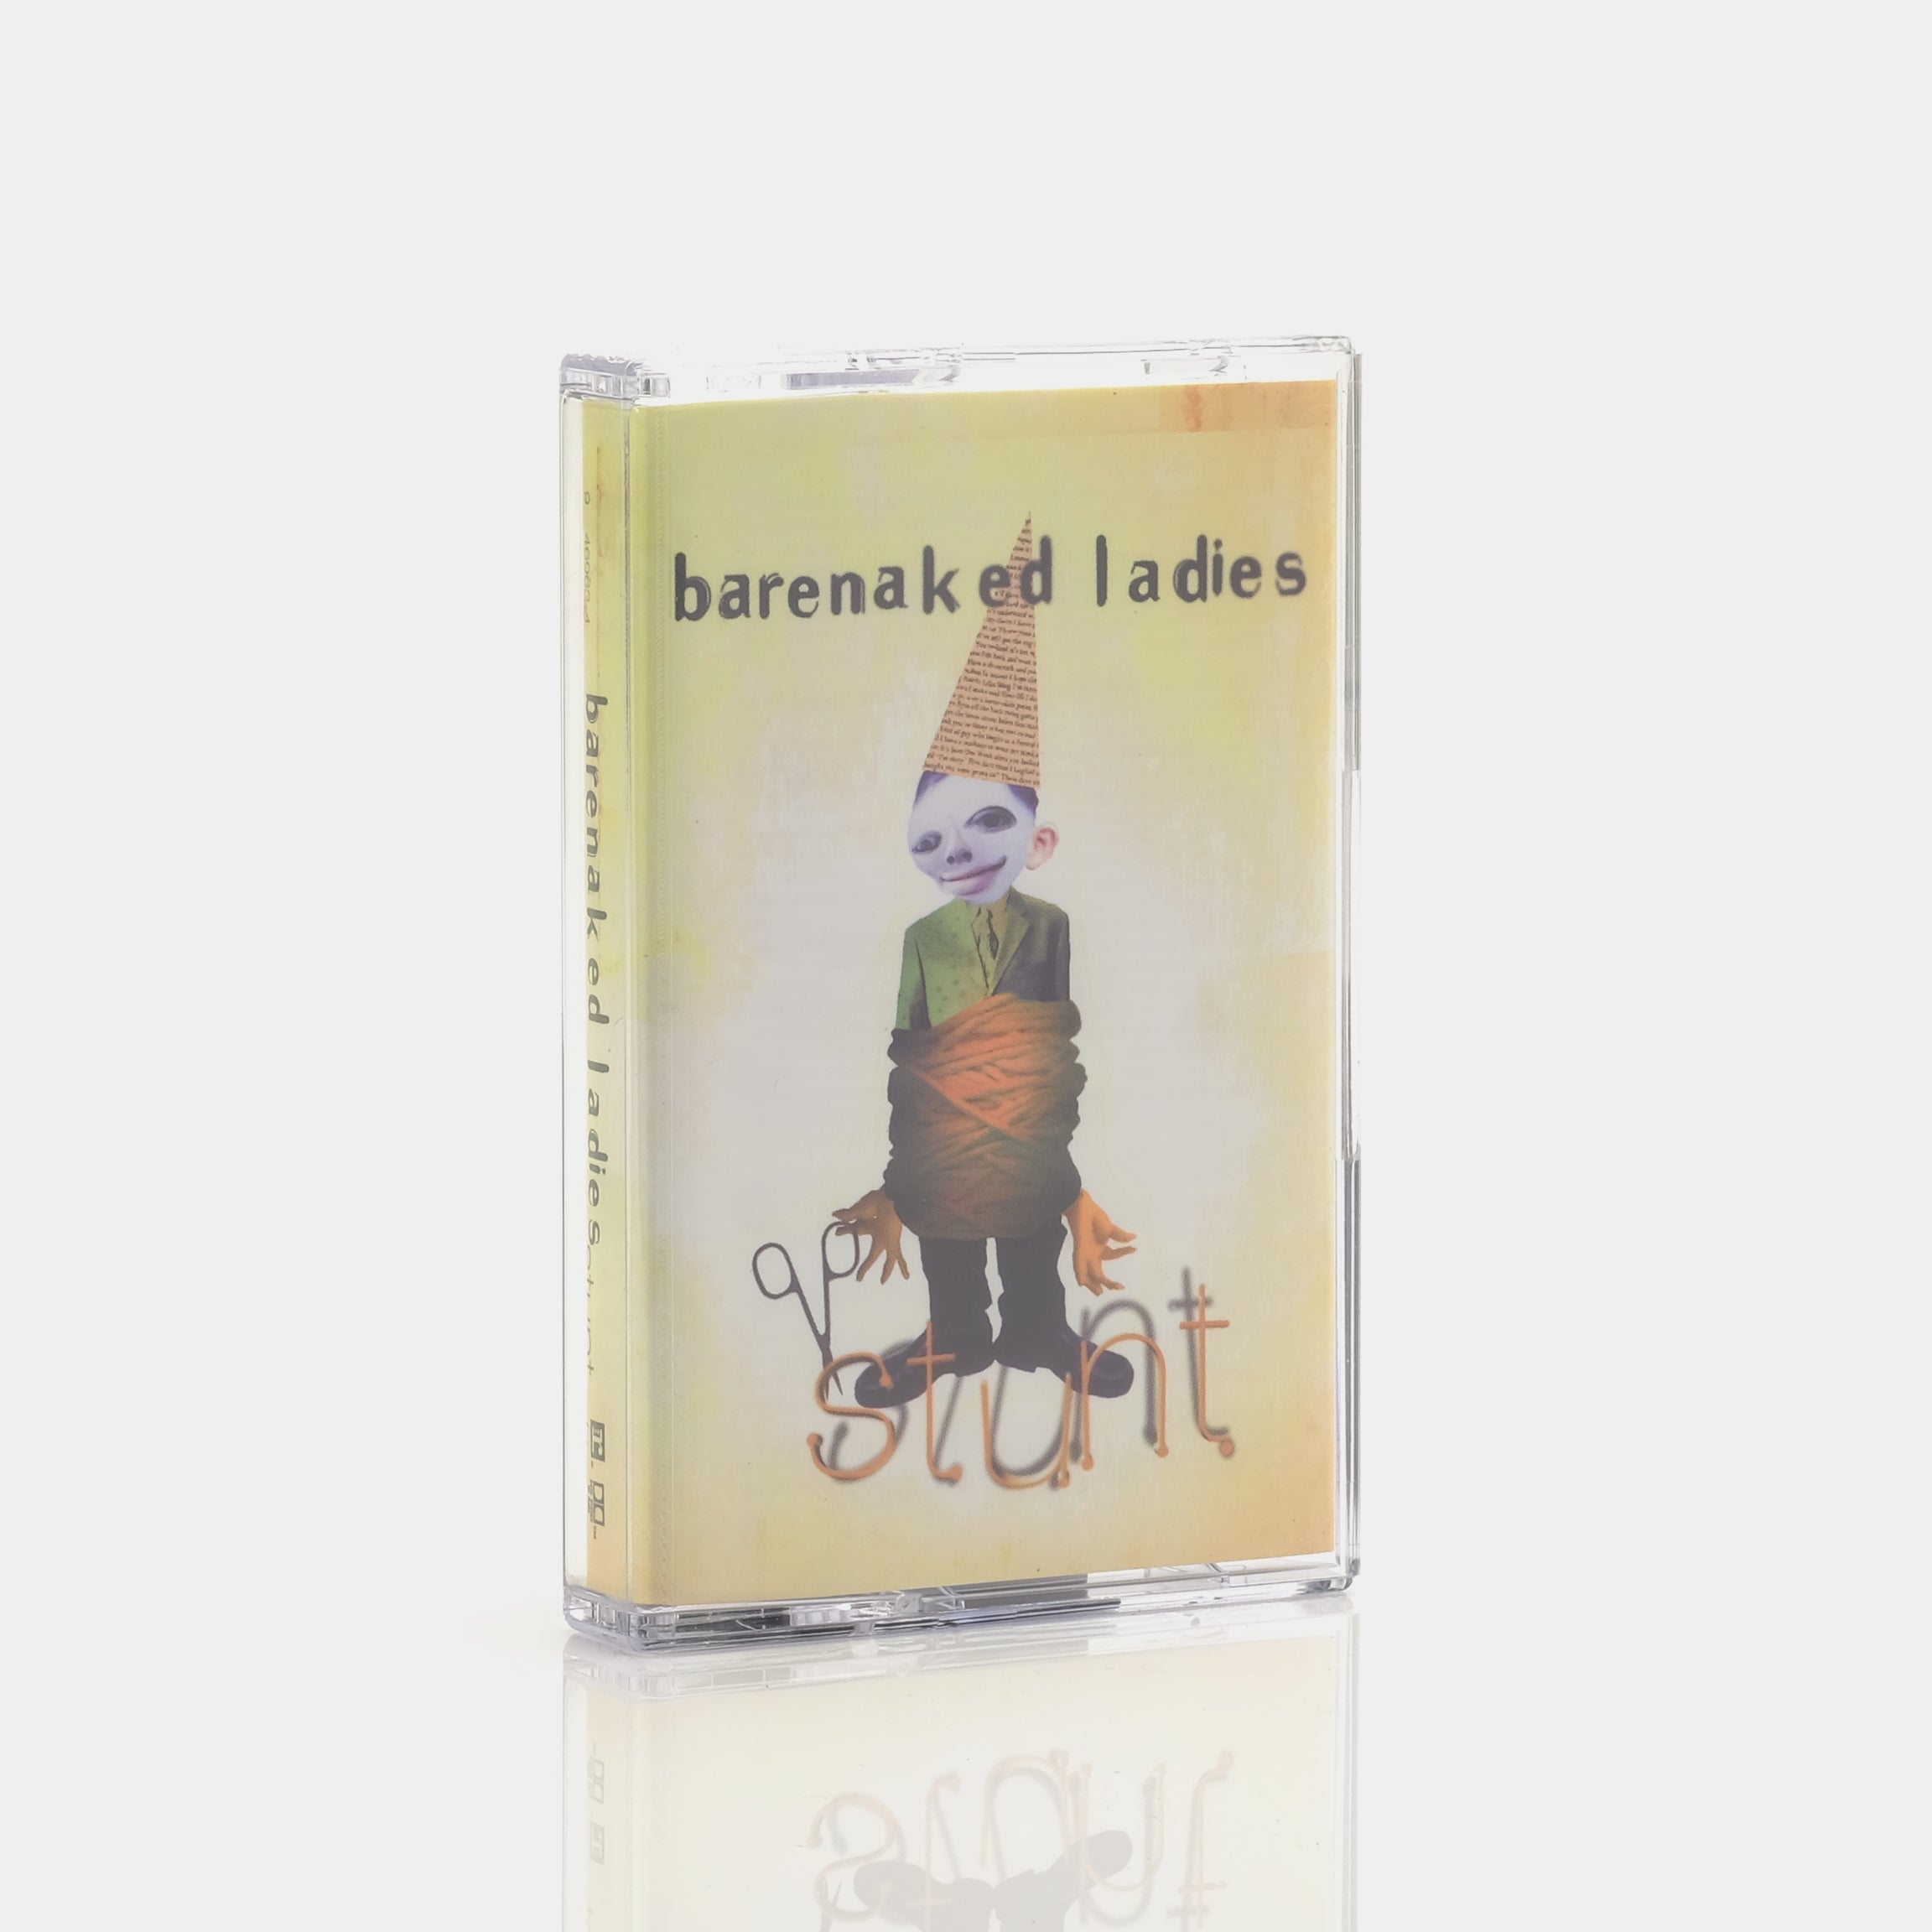 Barenaked Ladies Stunt Cassette Tape